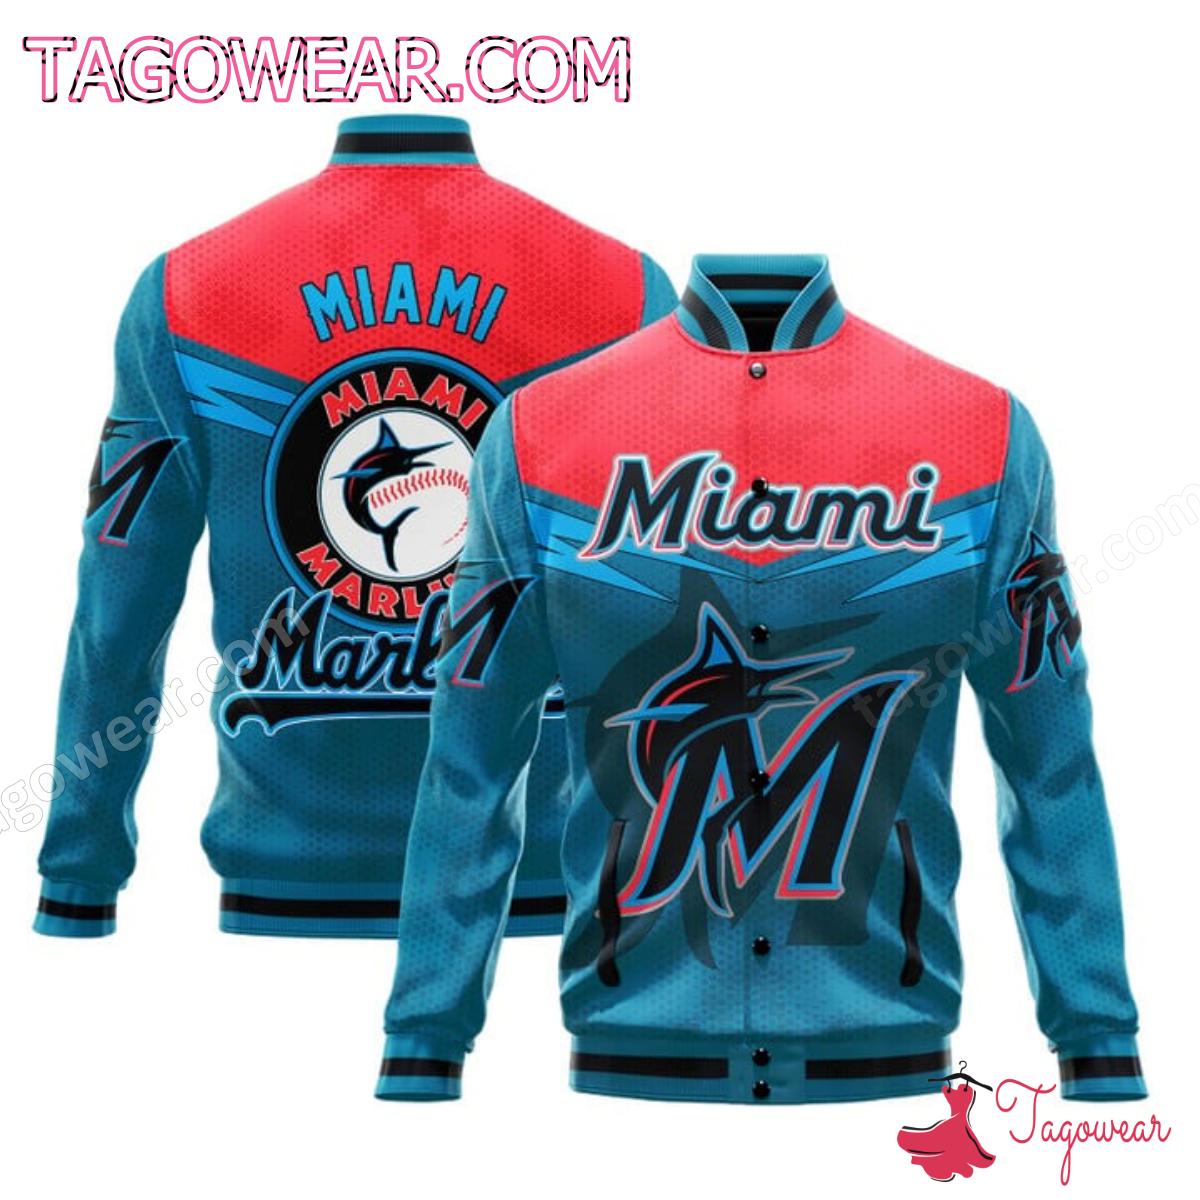 Miami Marlins Mlb Baseball Jacket